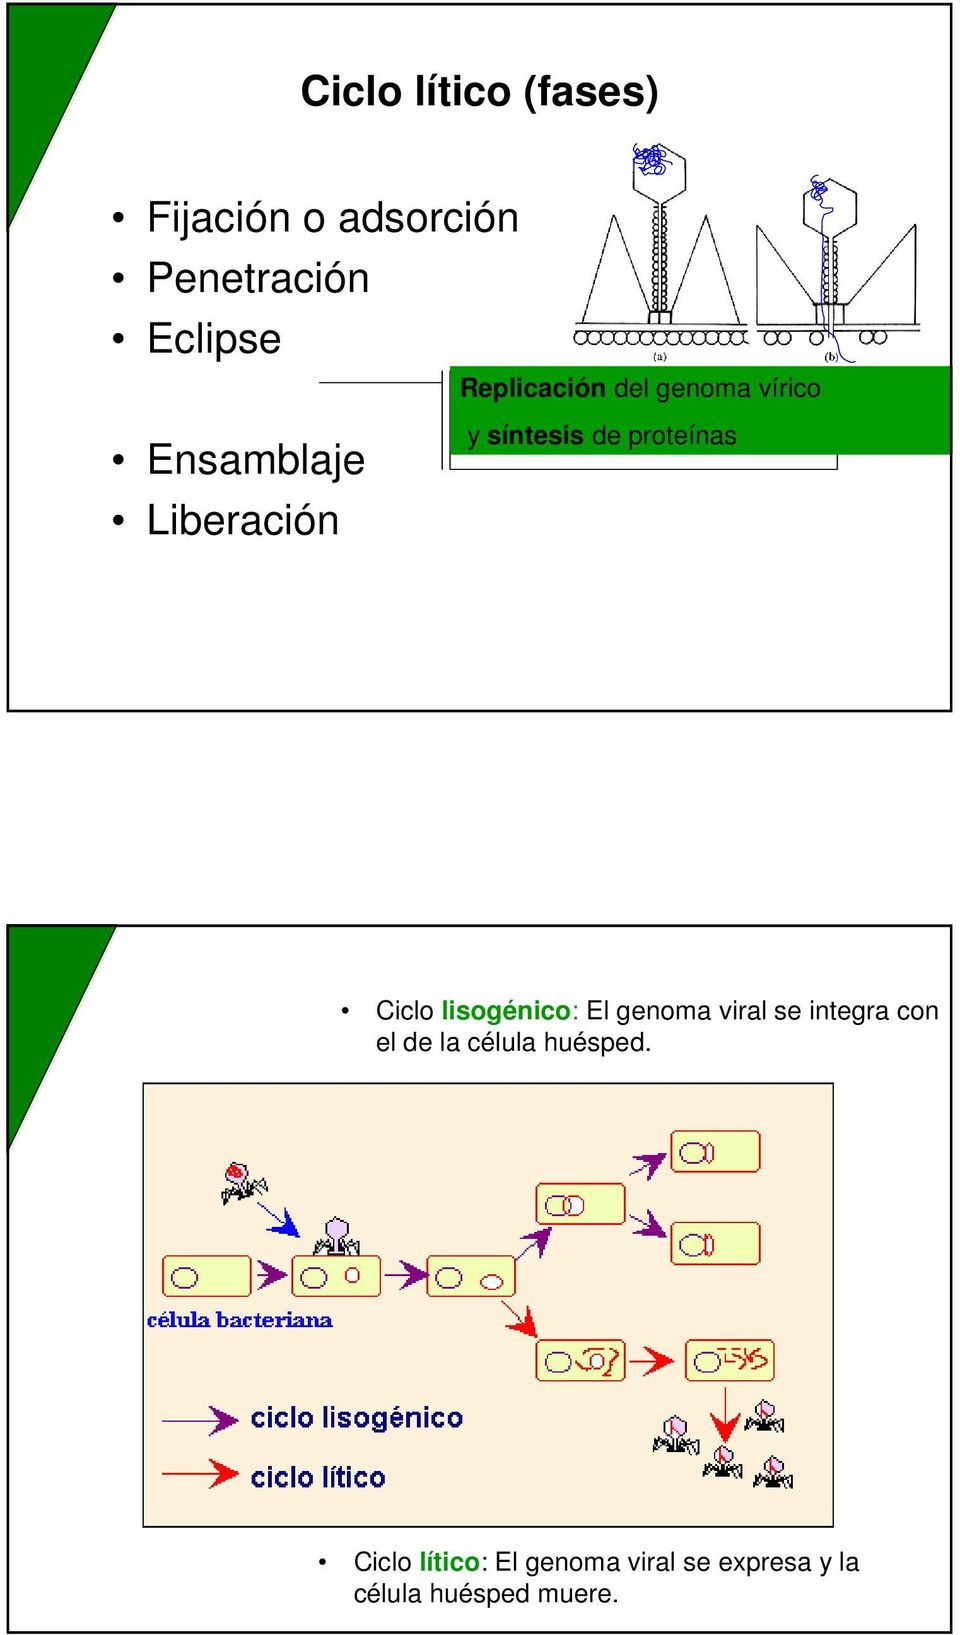 proteínas Ciclo lisogénico: El genoma viral se integra con el de la